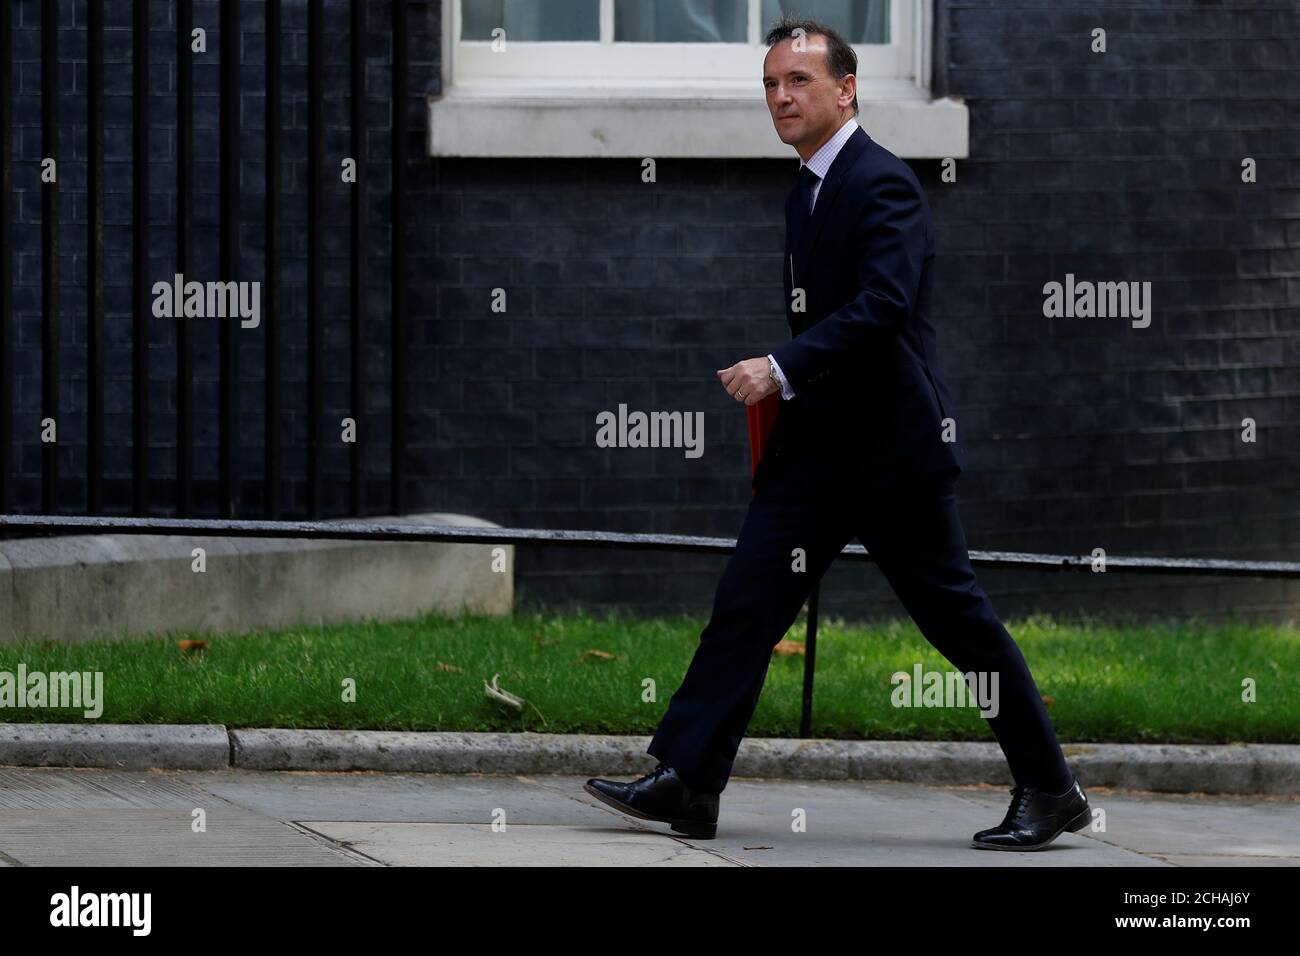 El Secretario de Estado de Gran Bretaña para Gales Alun Cairns llega a Downing Street en Londres, Gran Bretaña el 18 de junio de 2019. REUTERS/Peter Nicholls Foto de stock